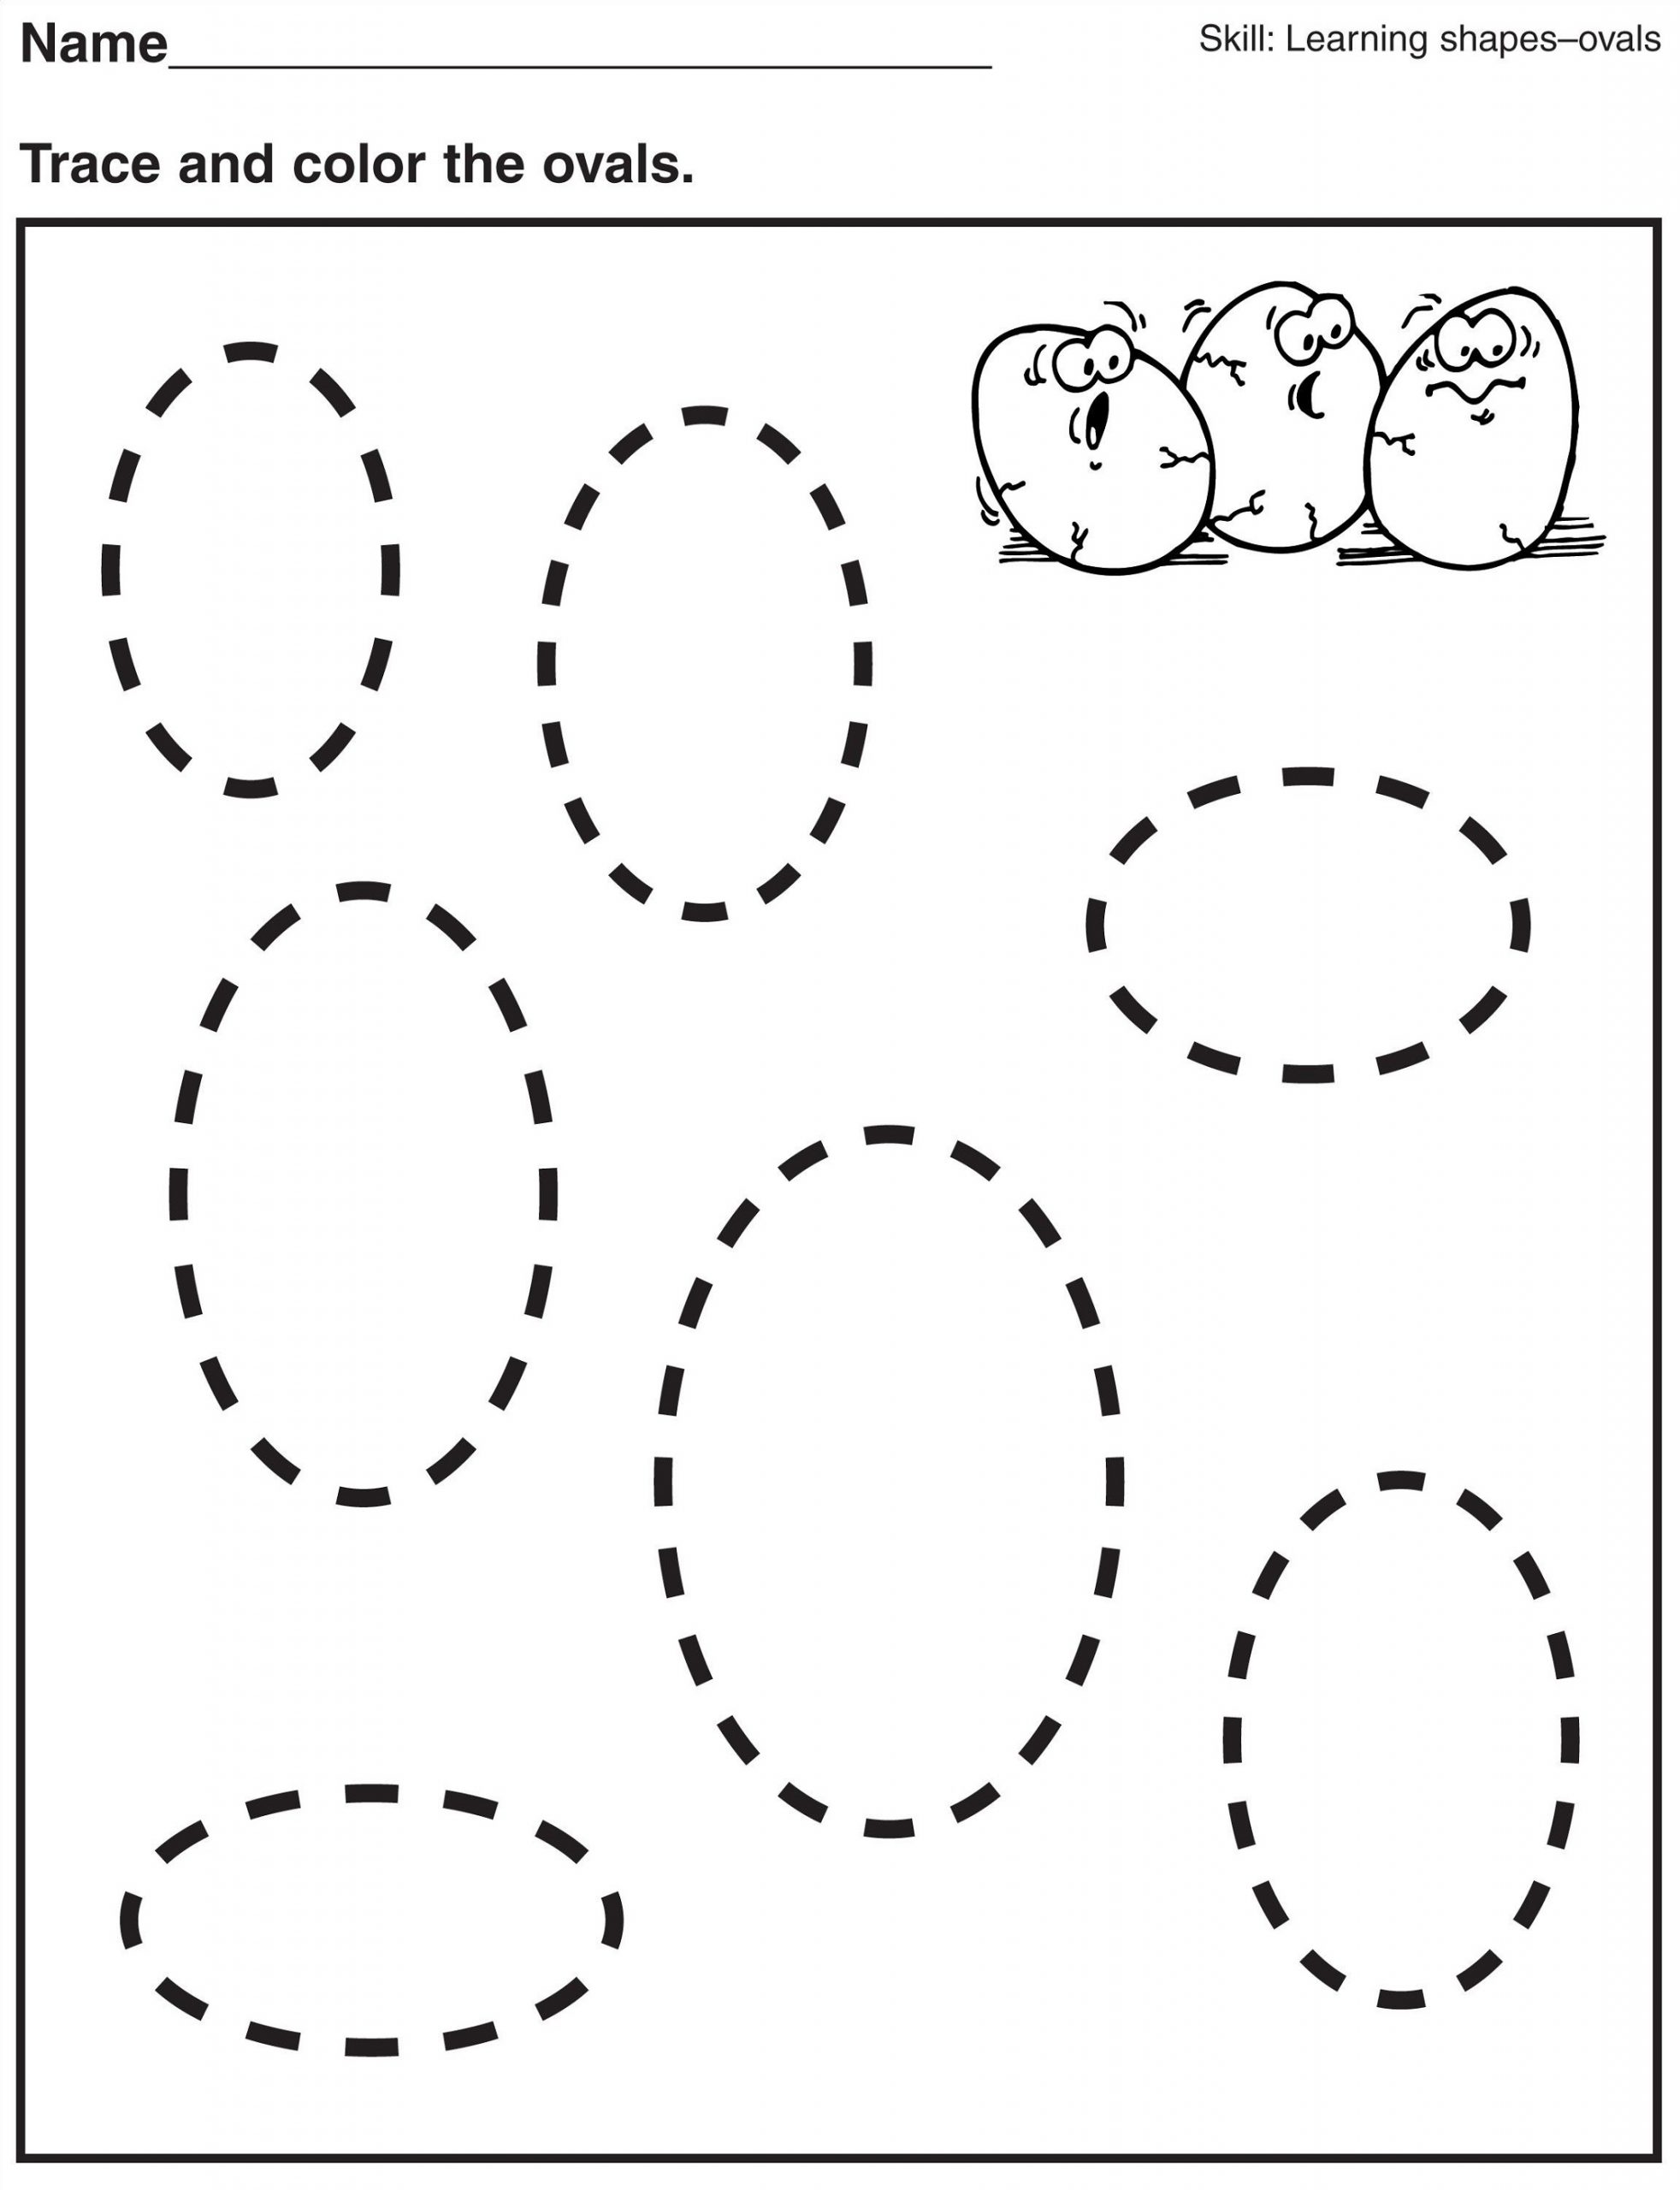 Oval shapes worksheets for kids